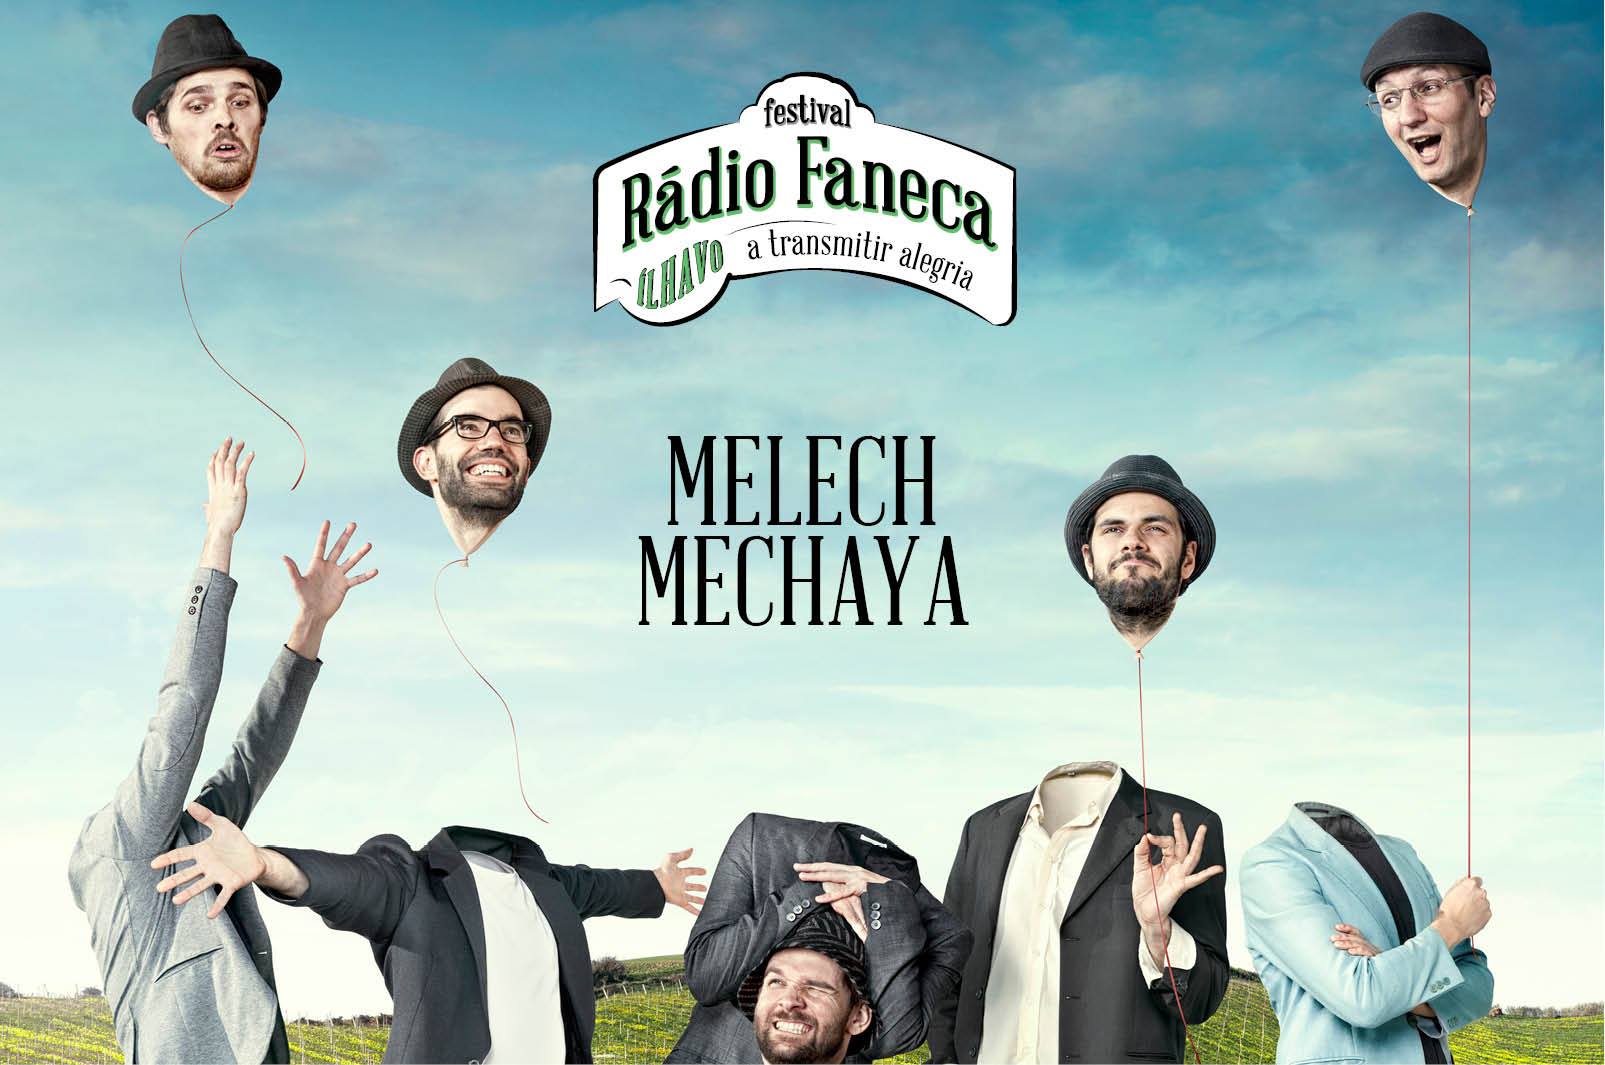 Melech Mechaya